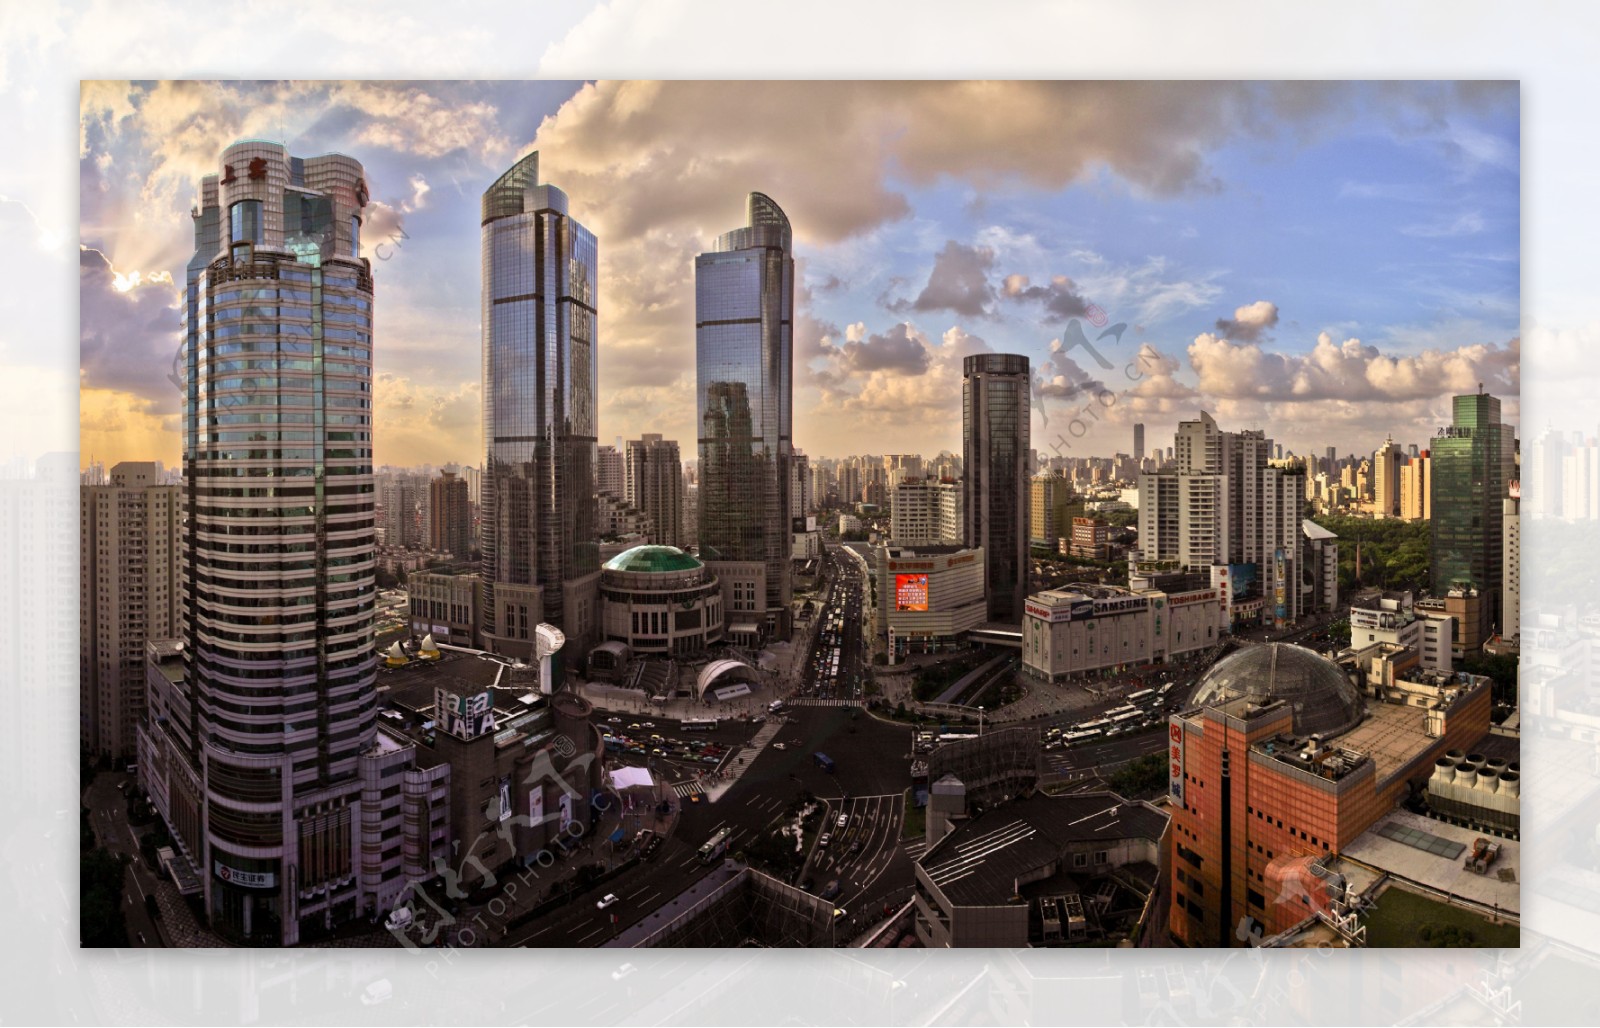 上海徐家汇商圈图片